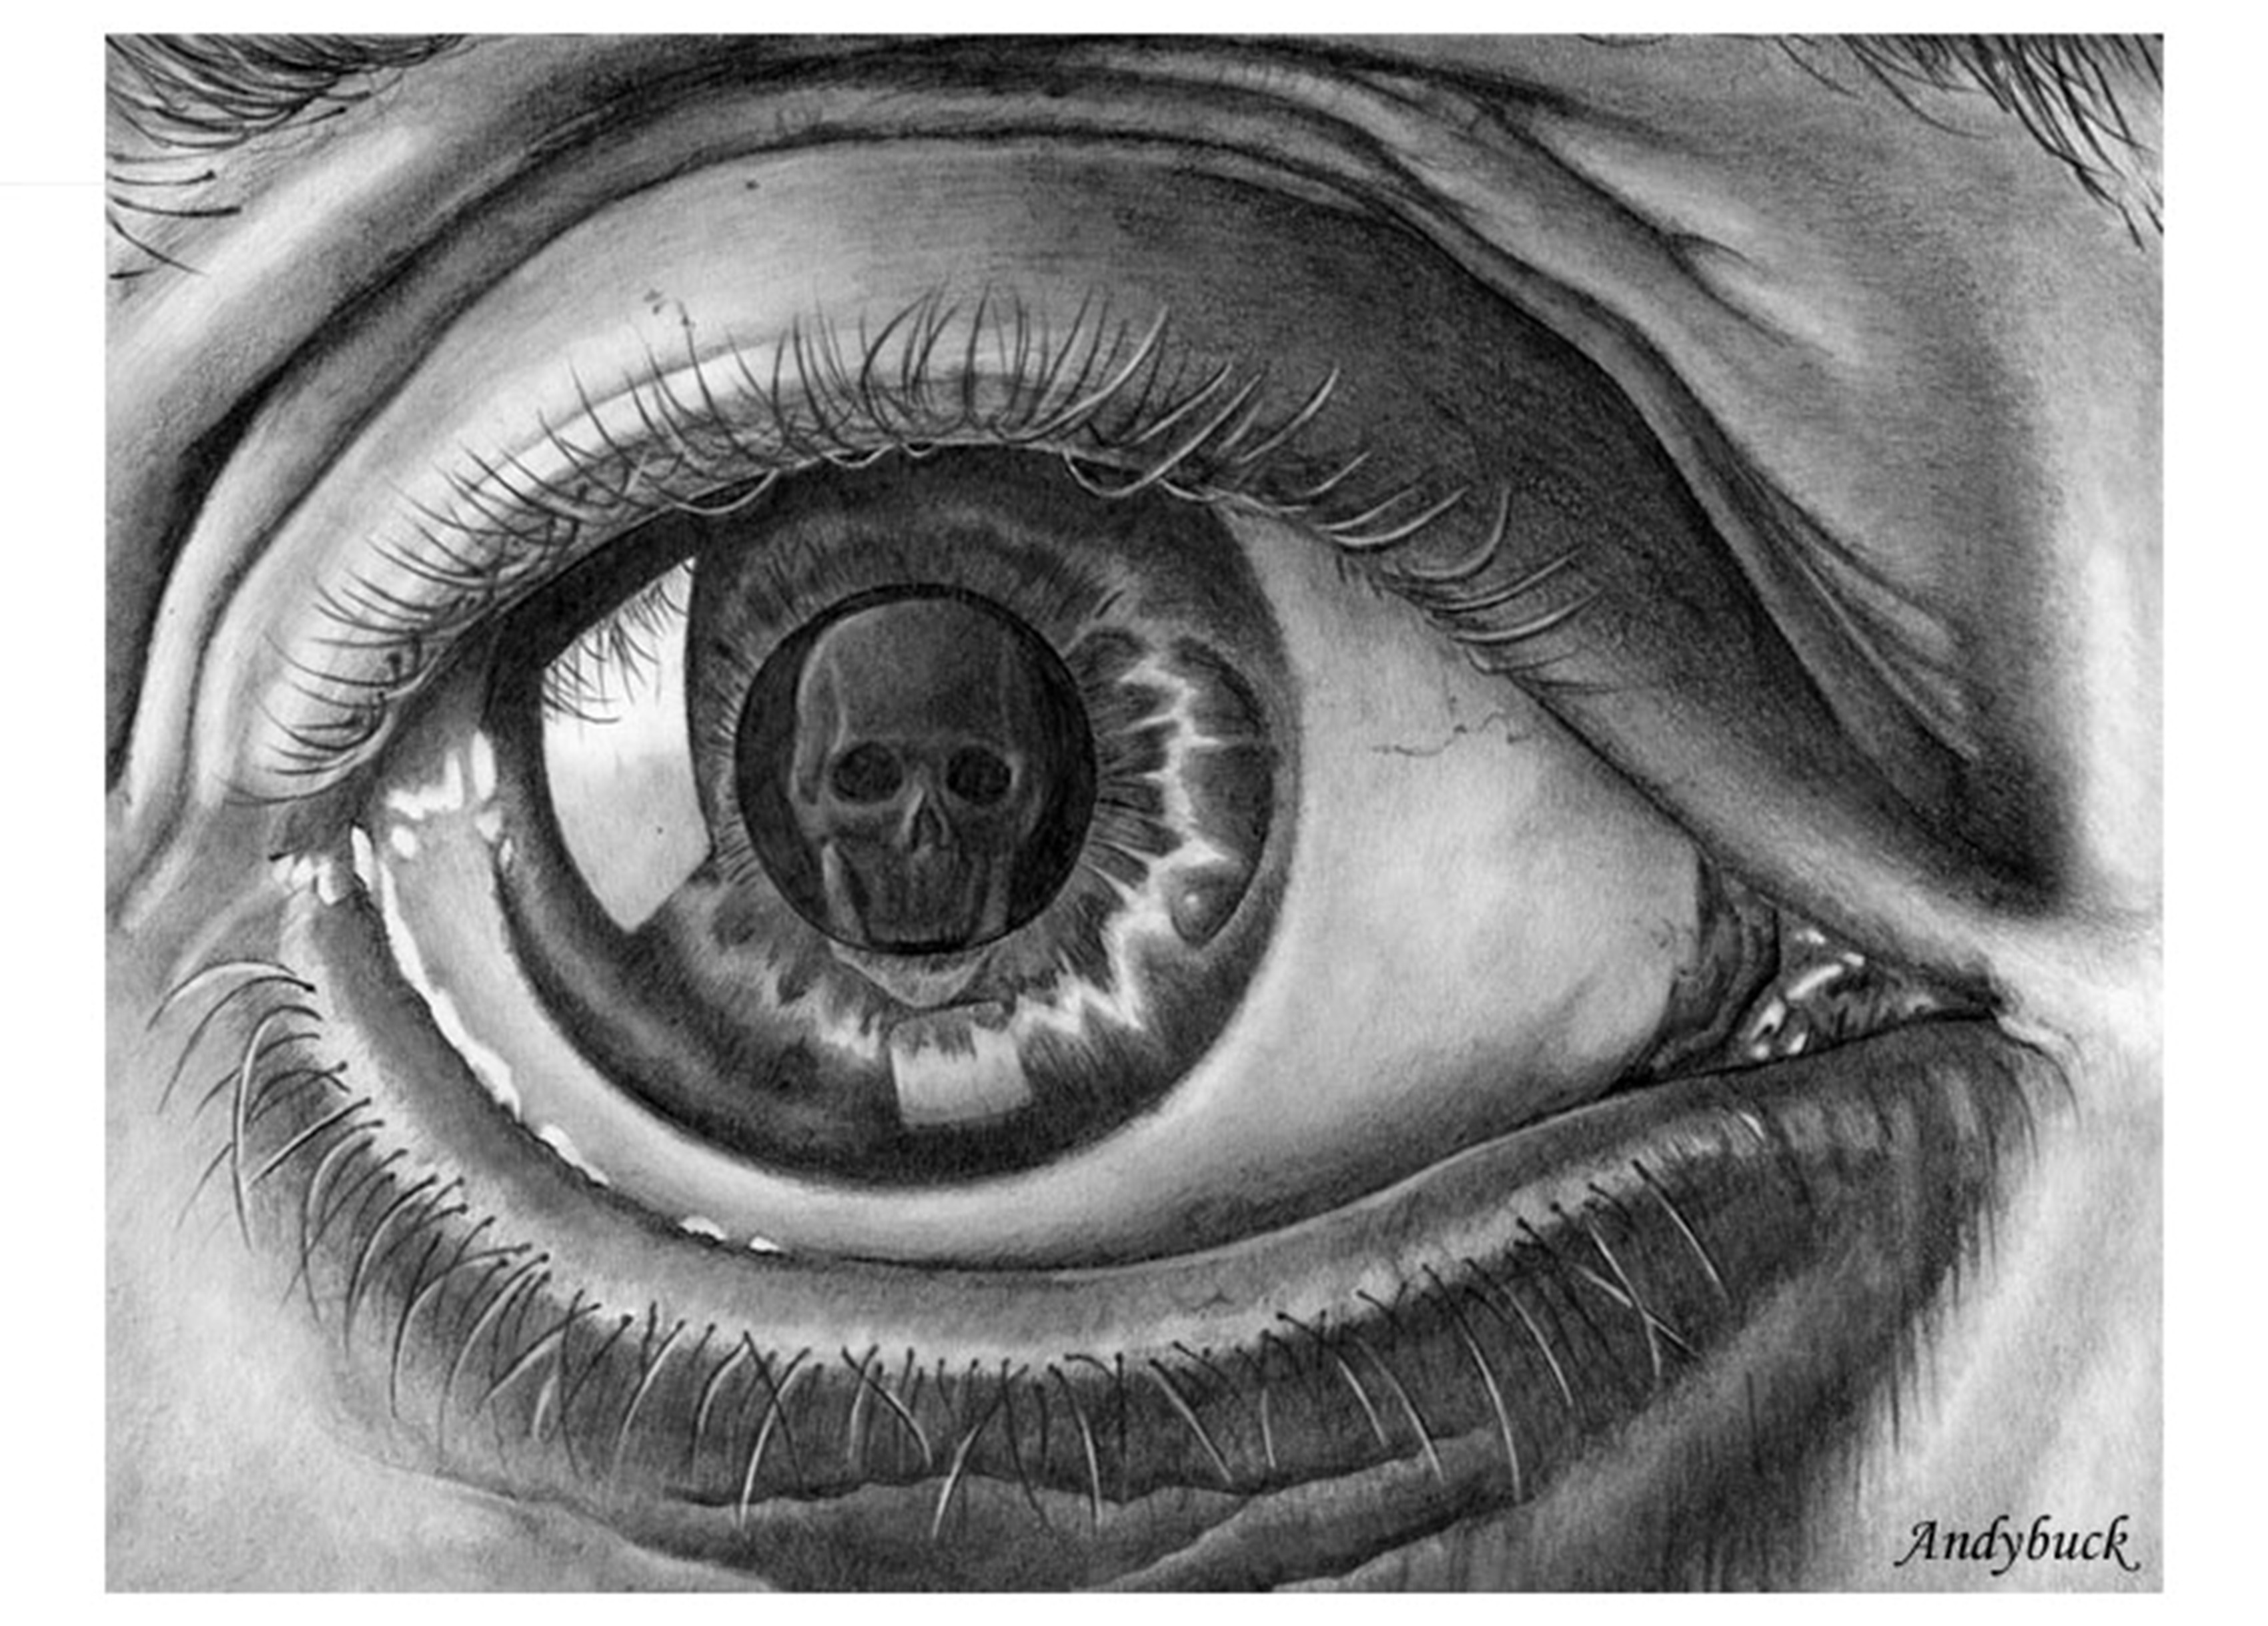 Eye of Death by M.C. Escher